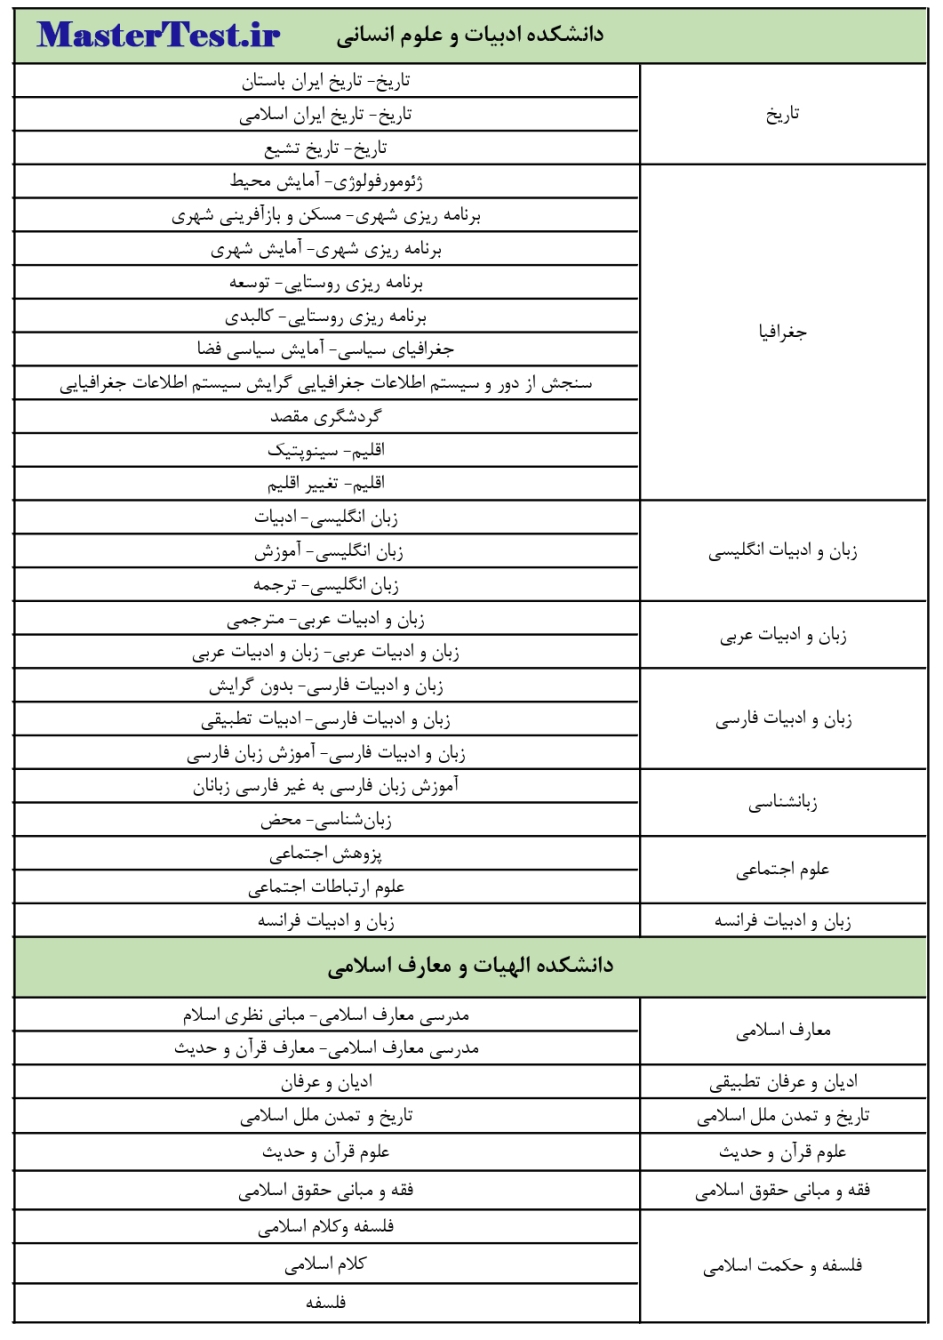 رشته های کارشناسی ارشد بدون آزمون دانشگاه فردوسی مشهد صفحه 1